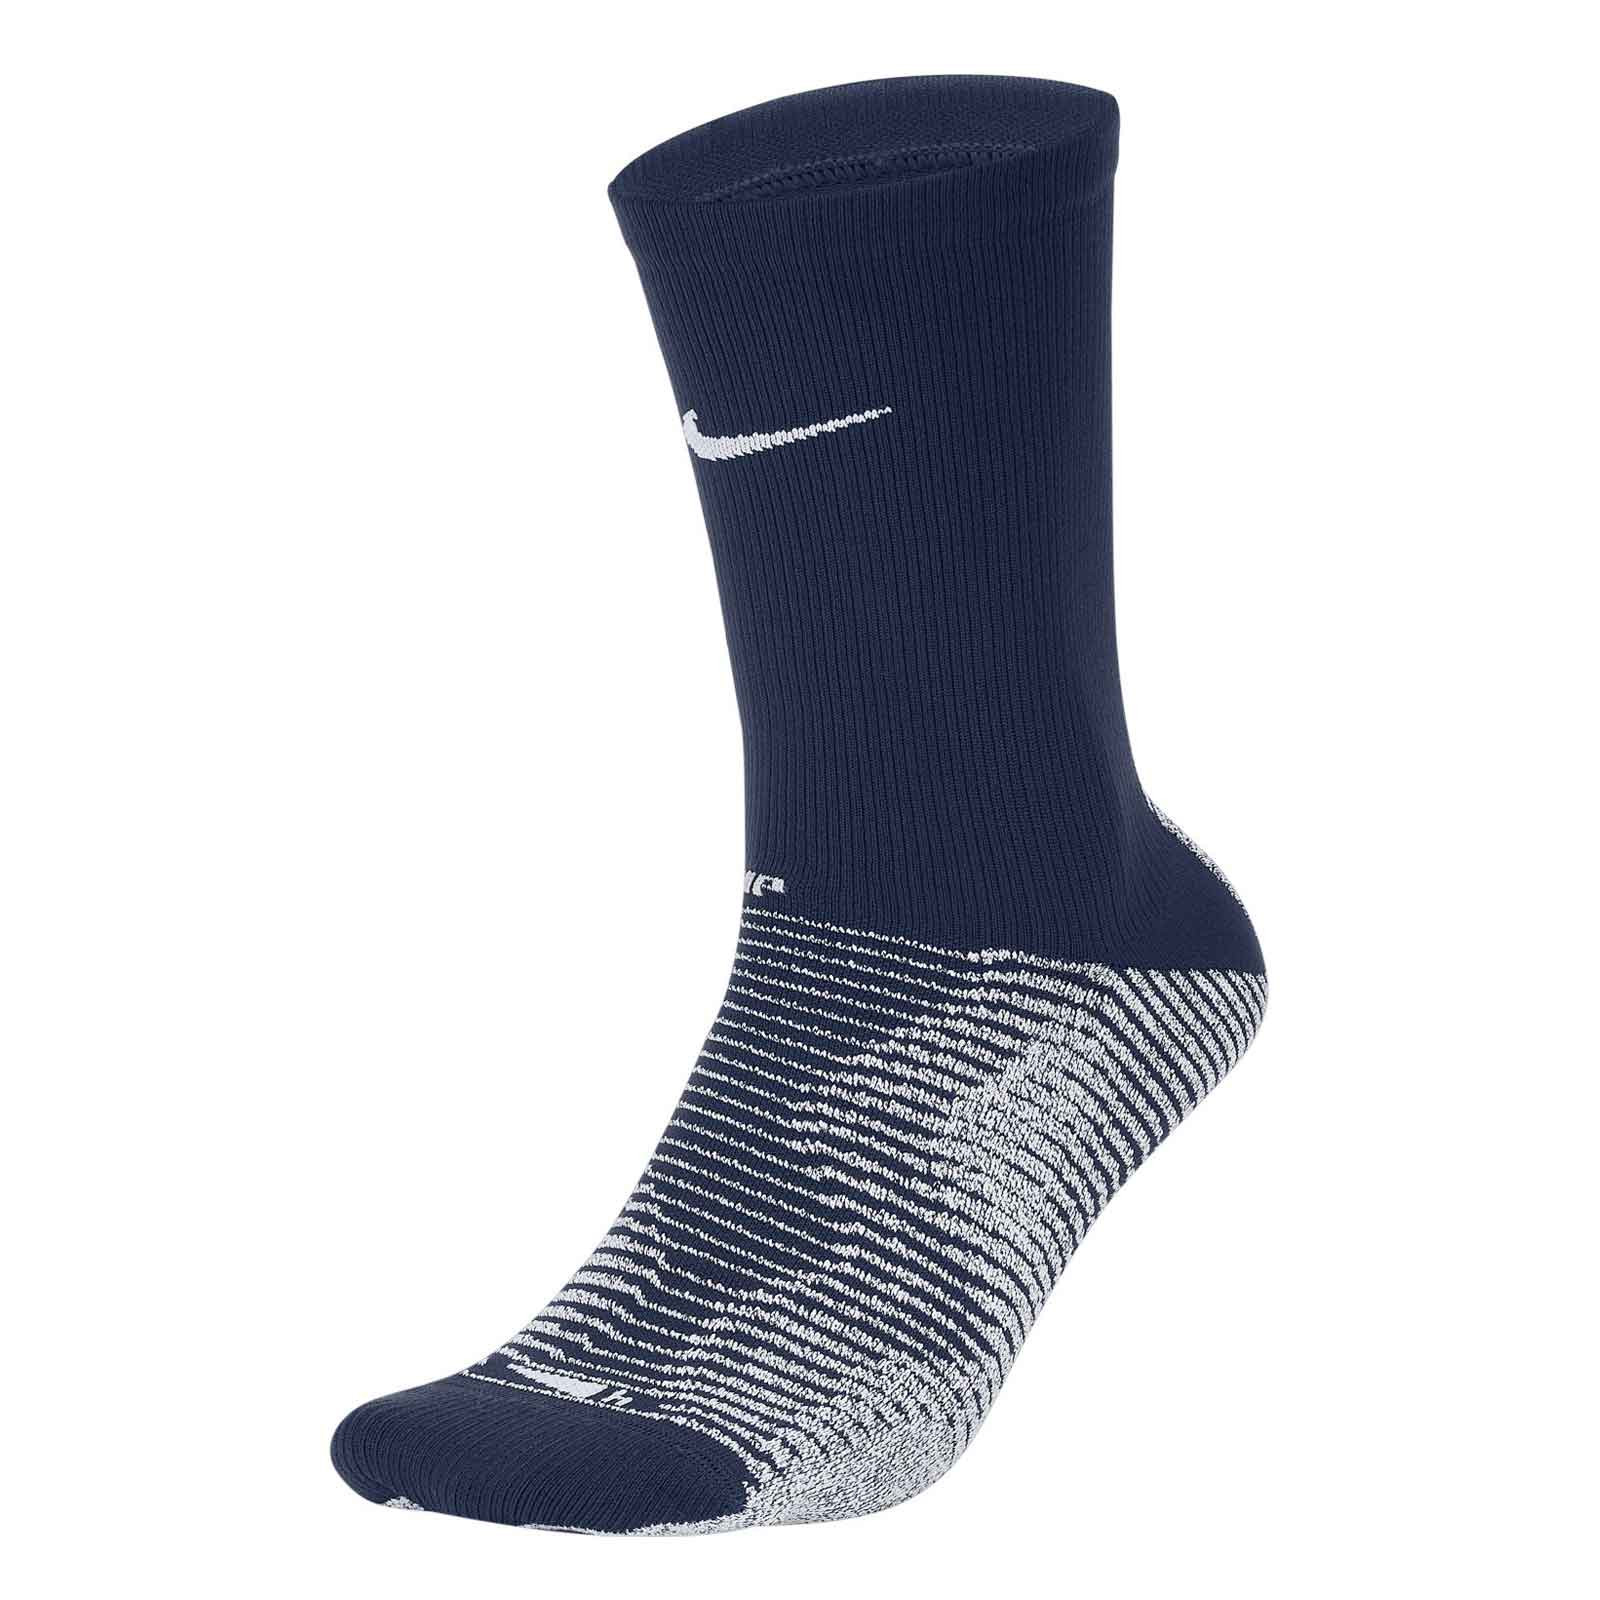 Calcetines Nike Grip Strike azul marino | futbolmania